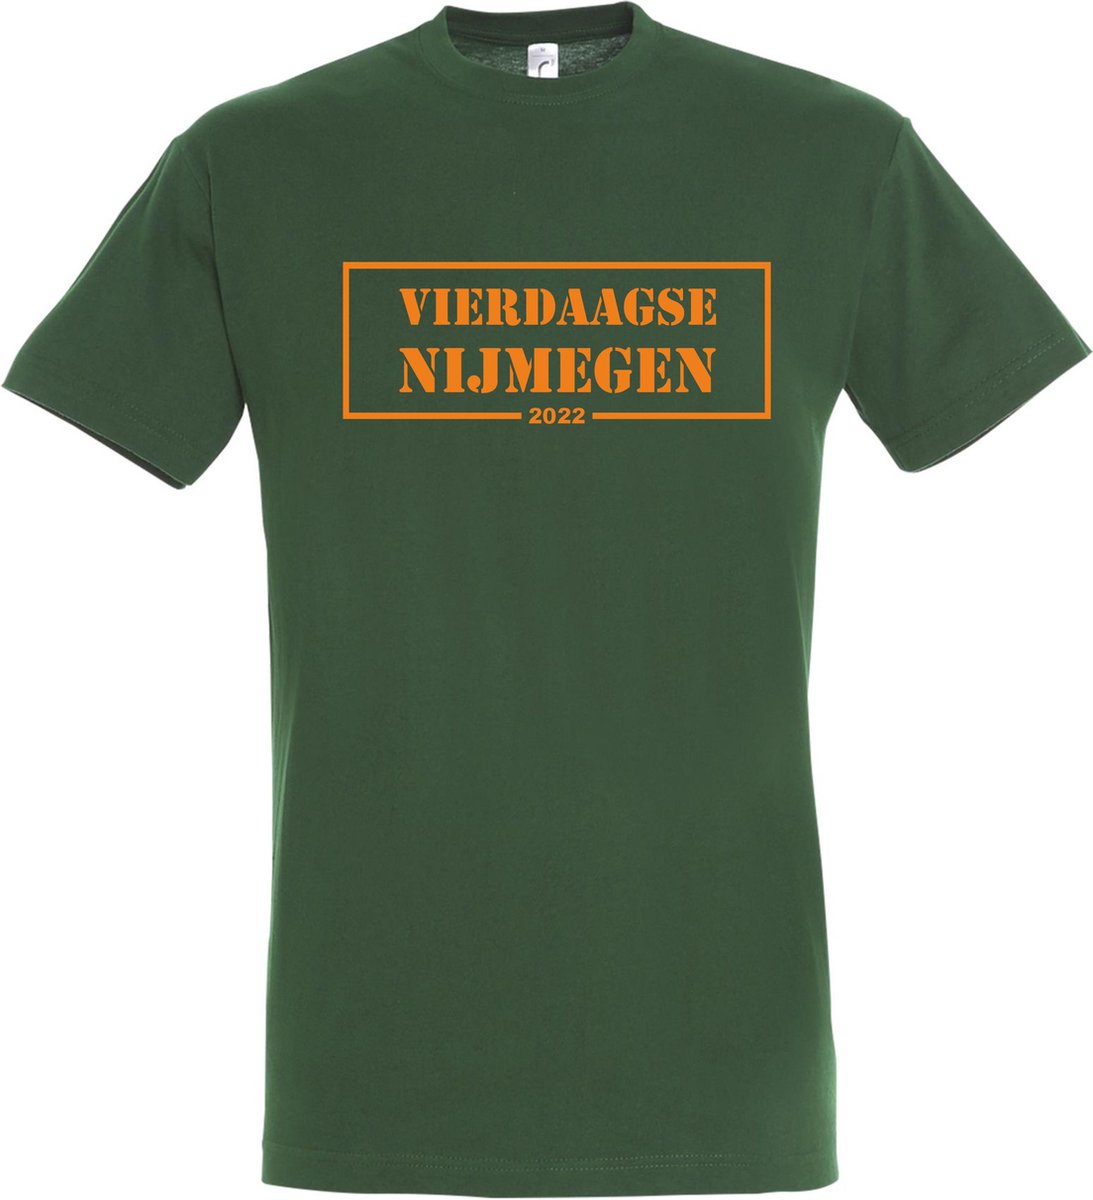 T-shirt Vierdaagse Nijmegen 2022 |Wandelvierdaagse | vierdaagse Nijmegen | Roze woensdag | Groen | maat M